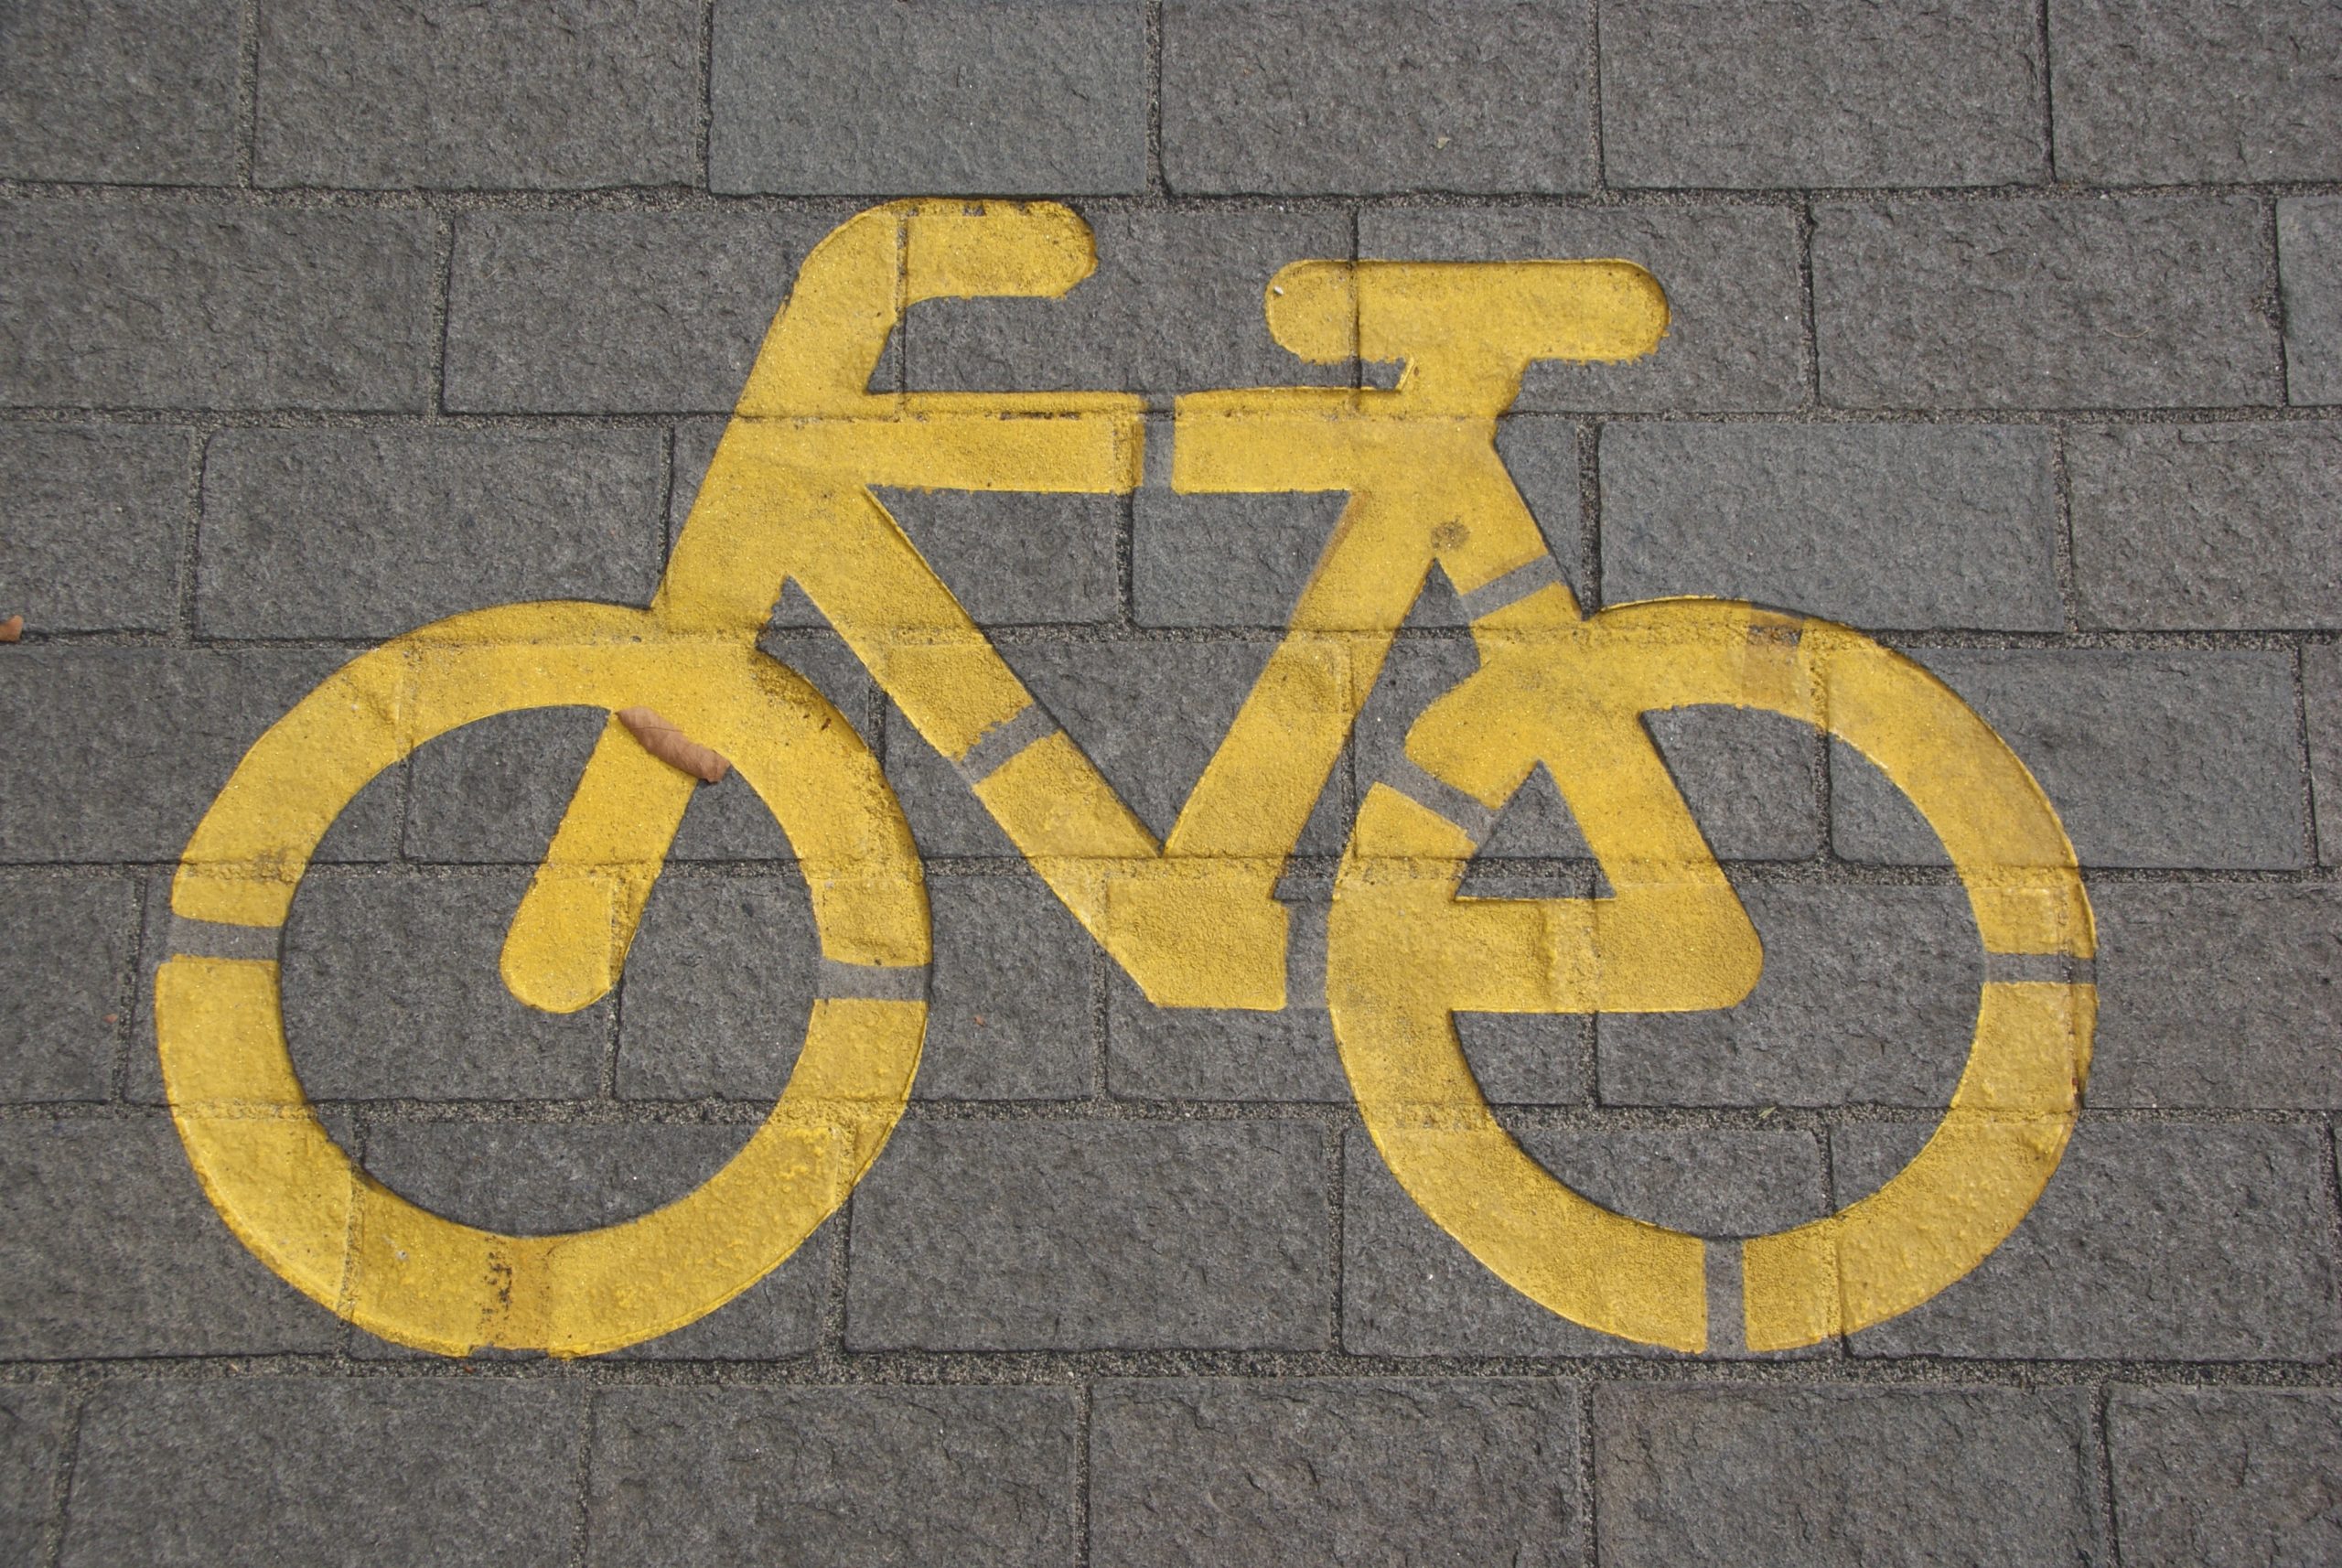 Les problèmes de sécurité freinent l'utilisation du vélo